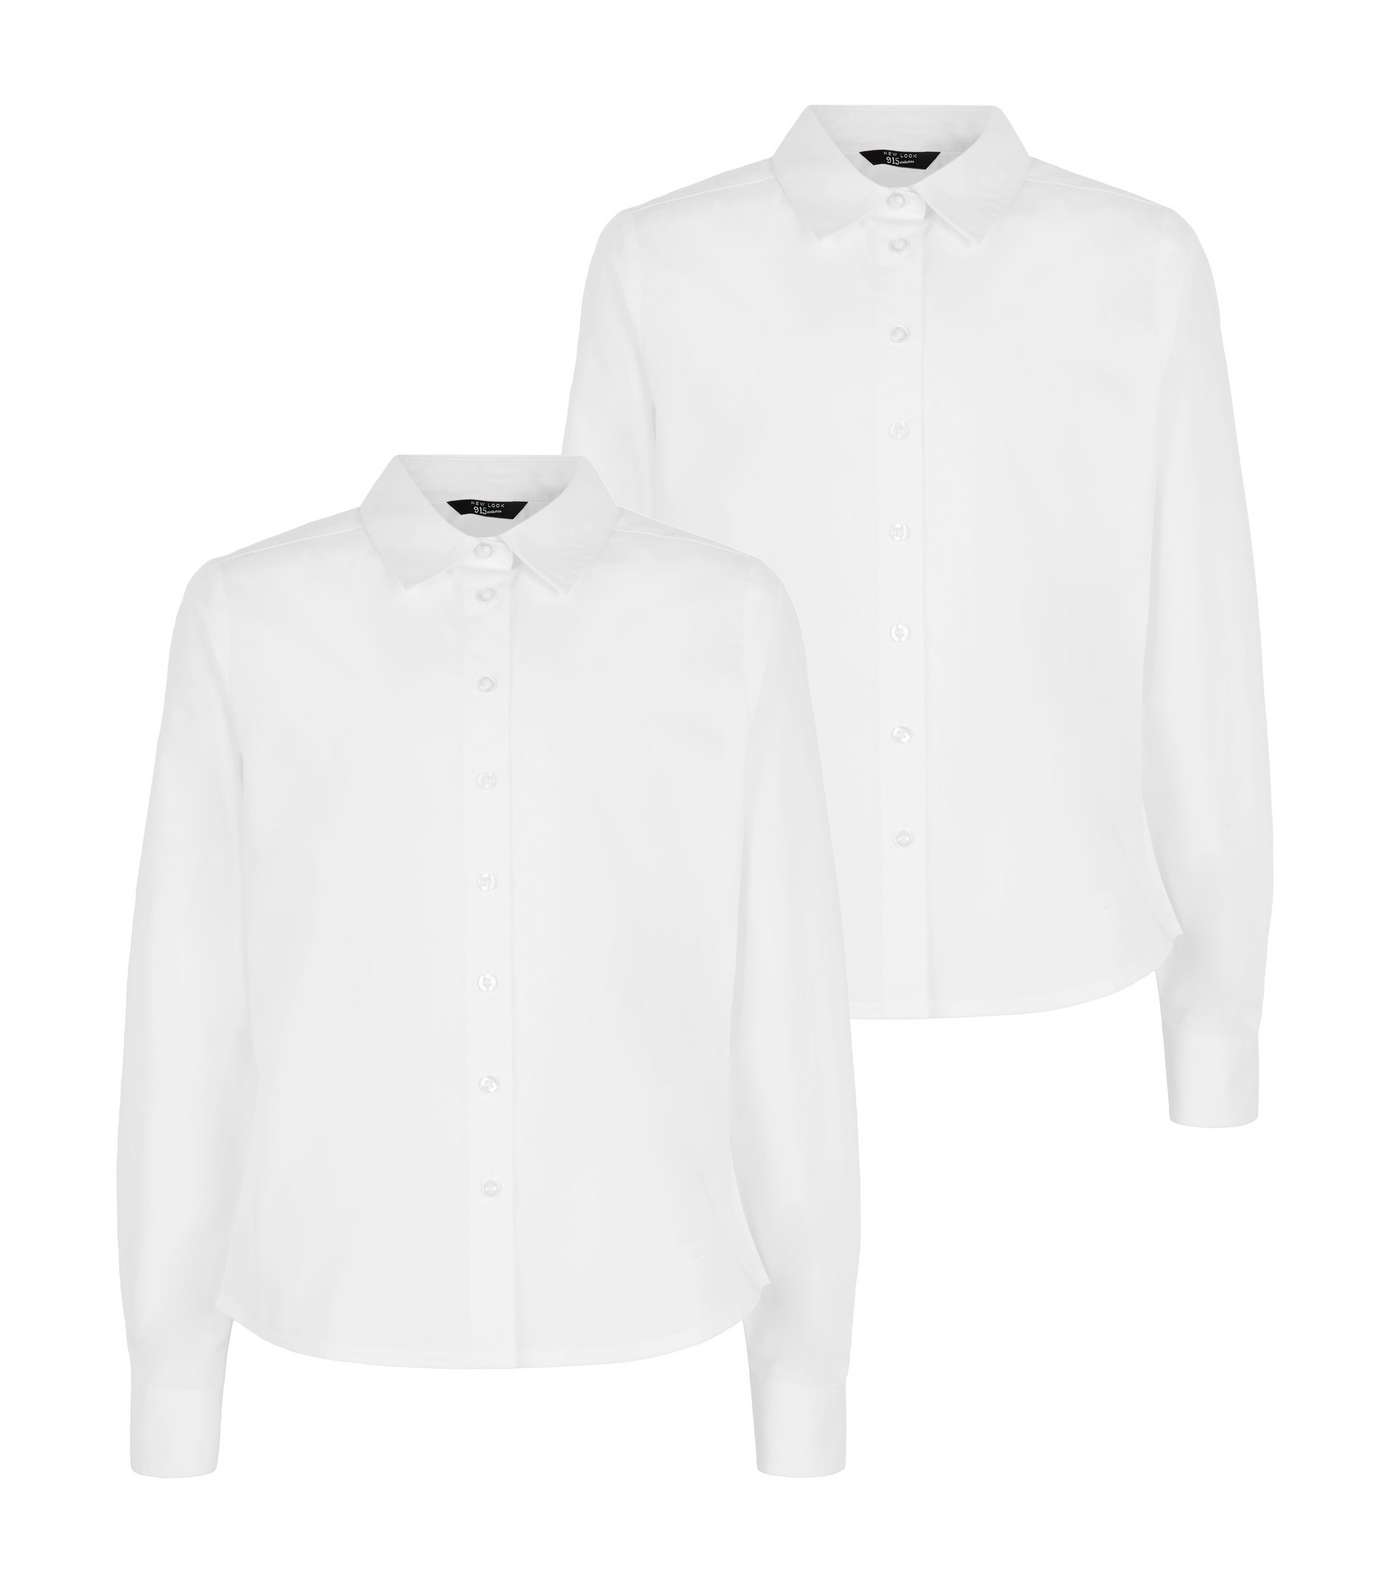 Girls 2 Pack White Long Sleeve Shirts Image 4